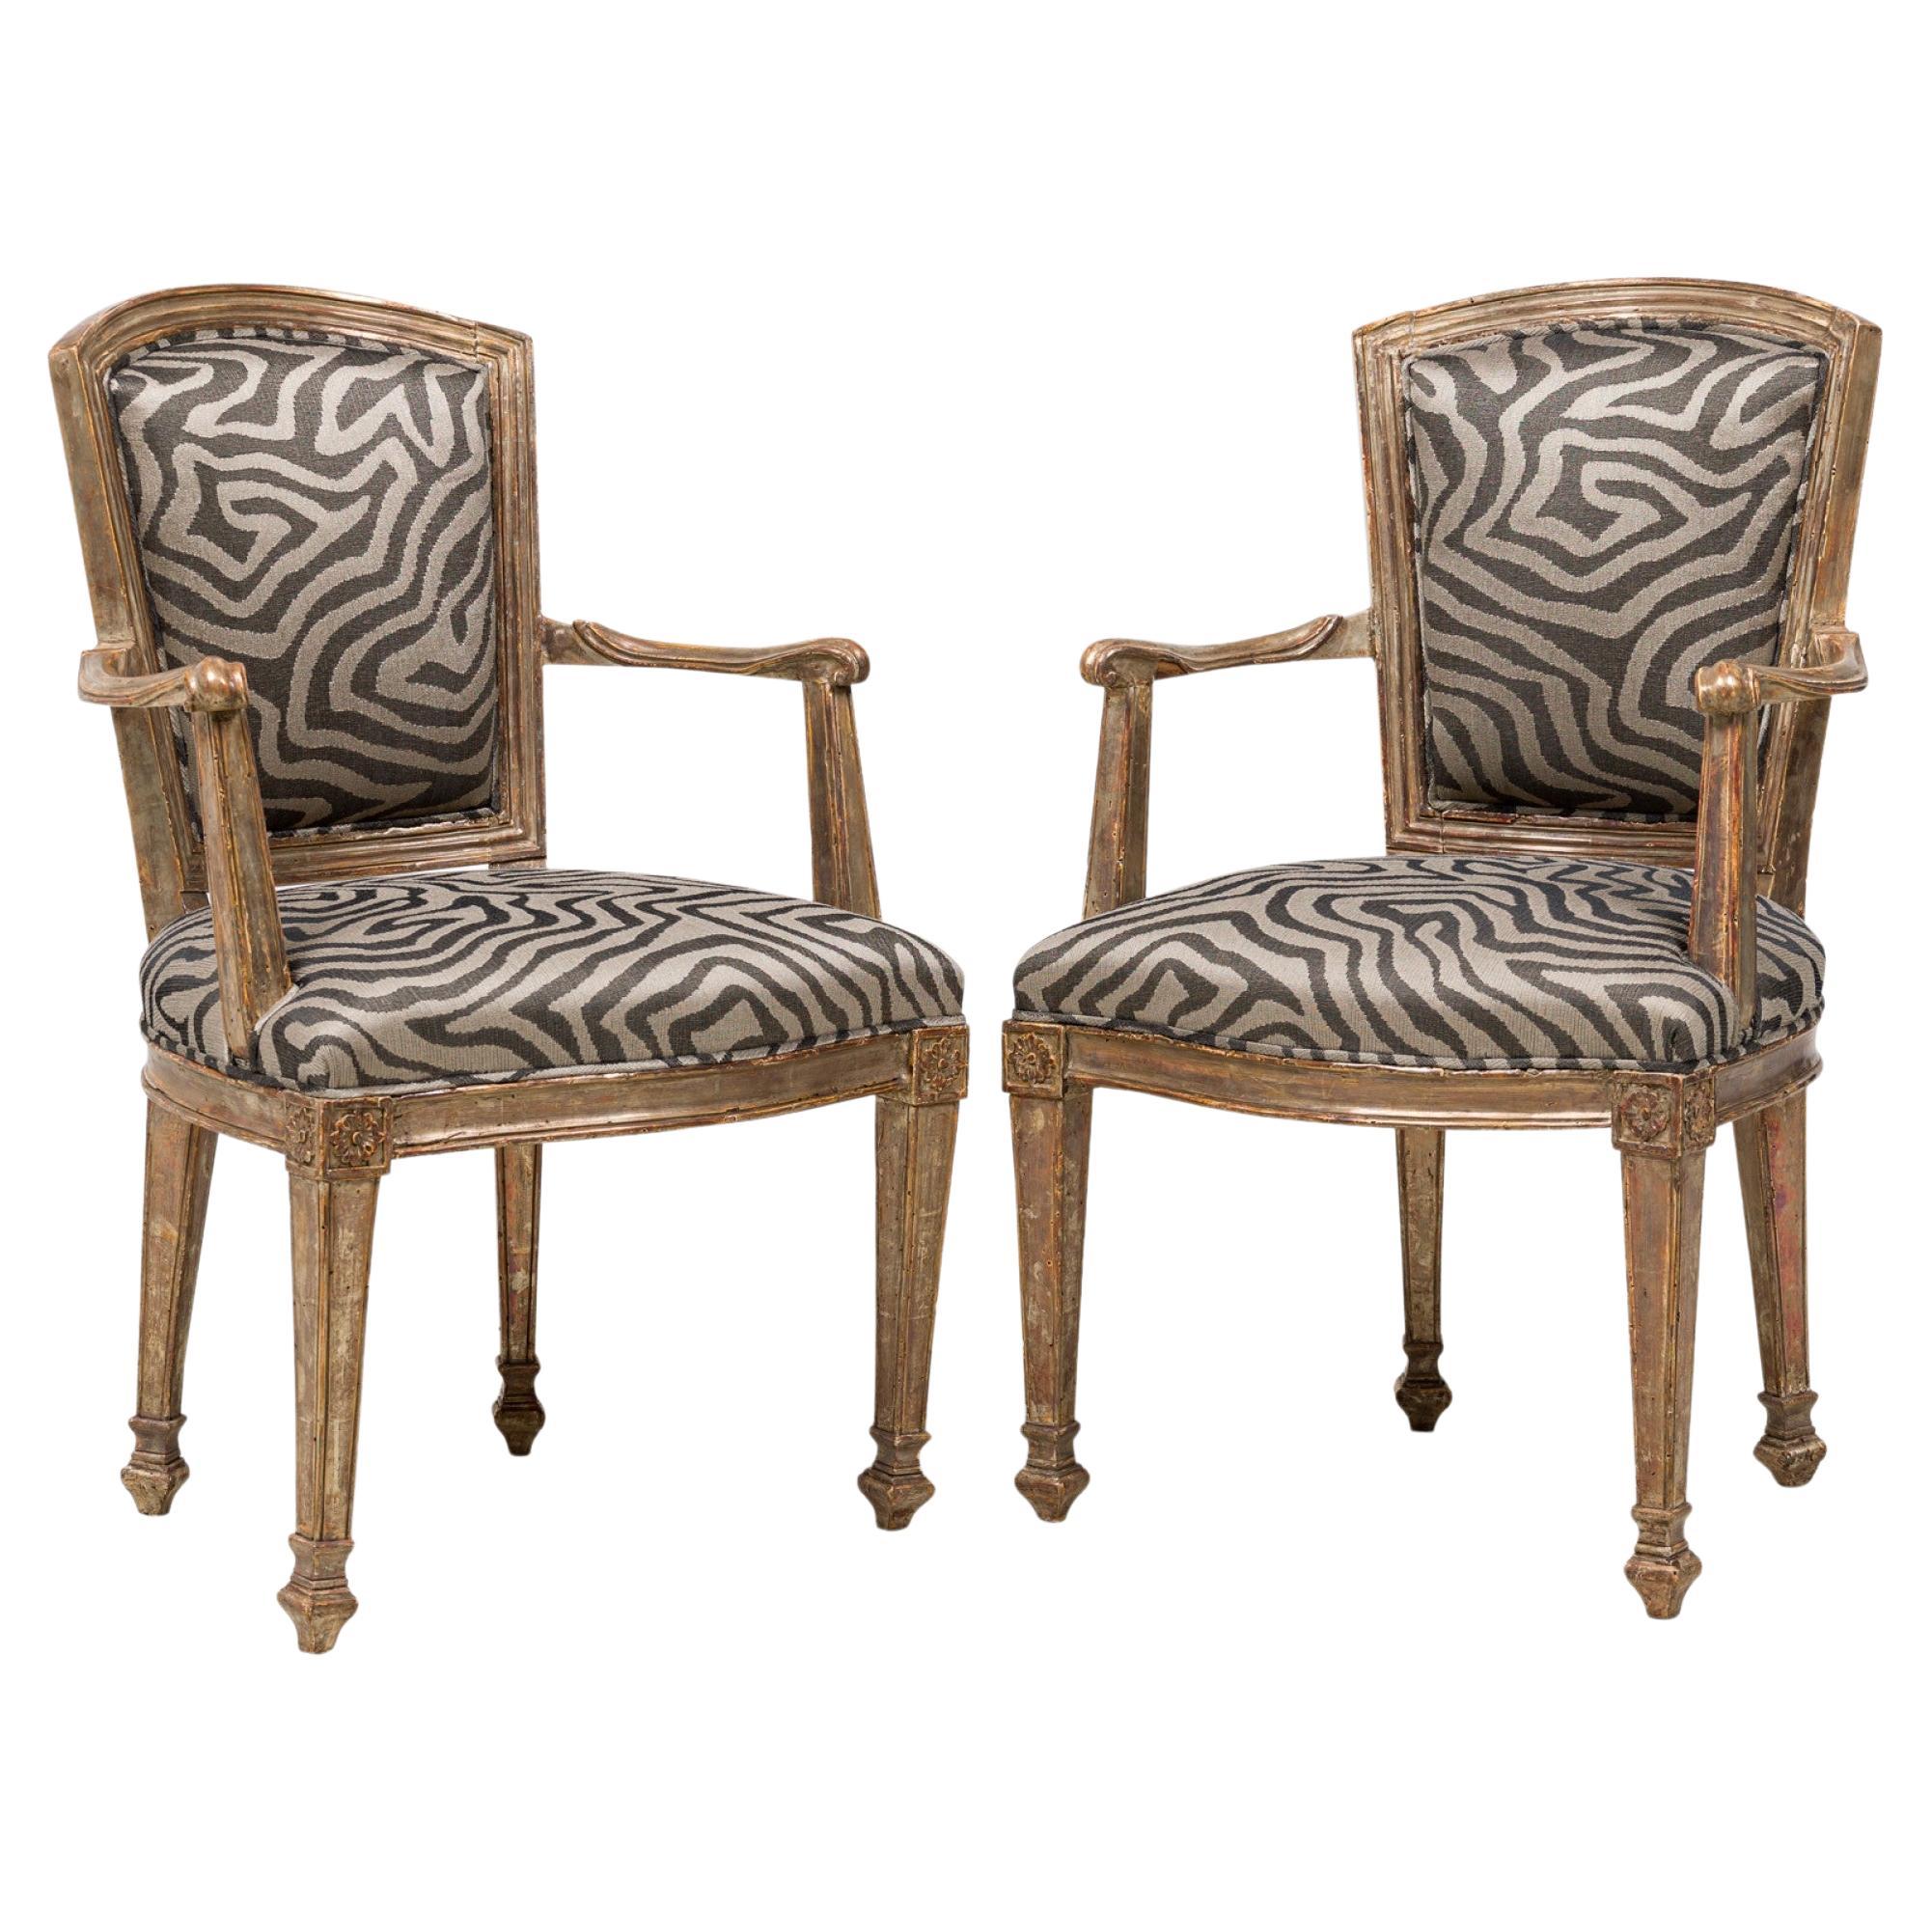 Ensemble de 4 fauteuils italiens néoclassiques Piedmontes tapissés en bois doré argenté